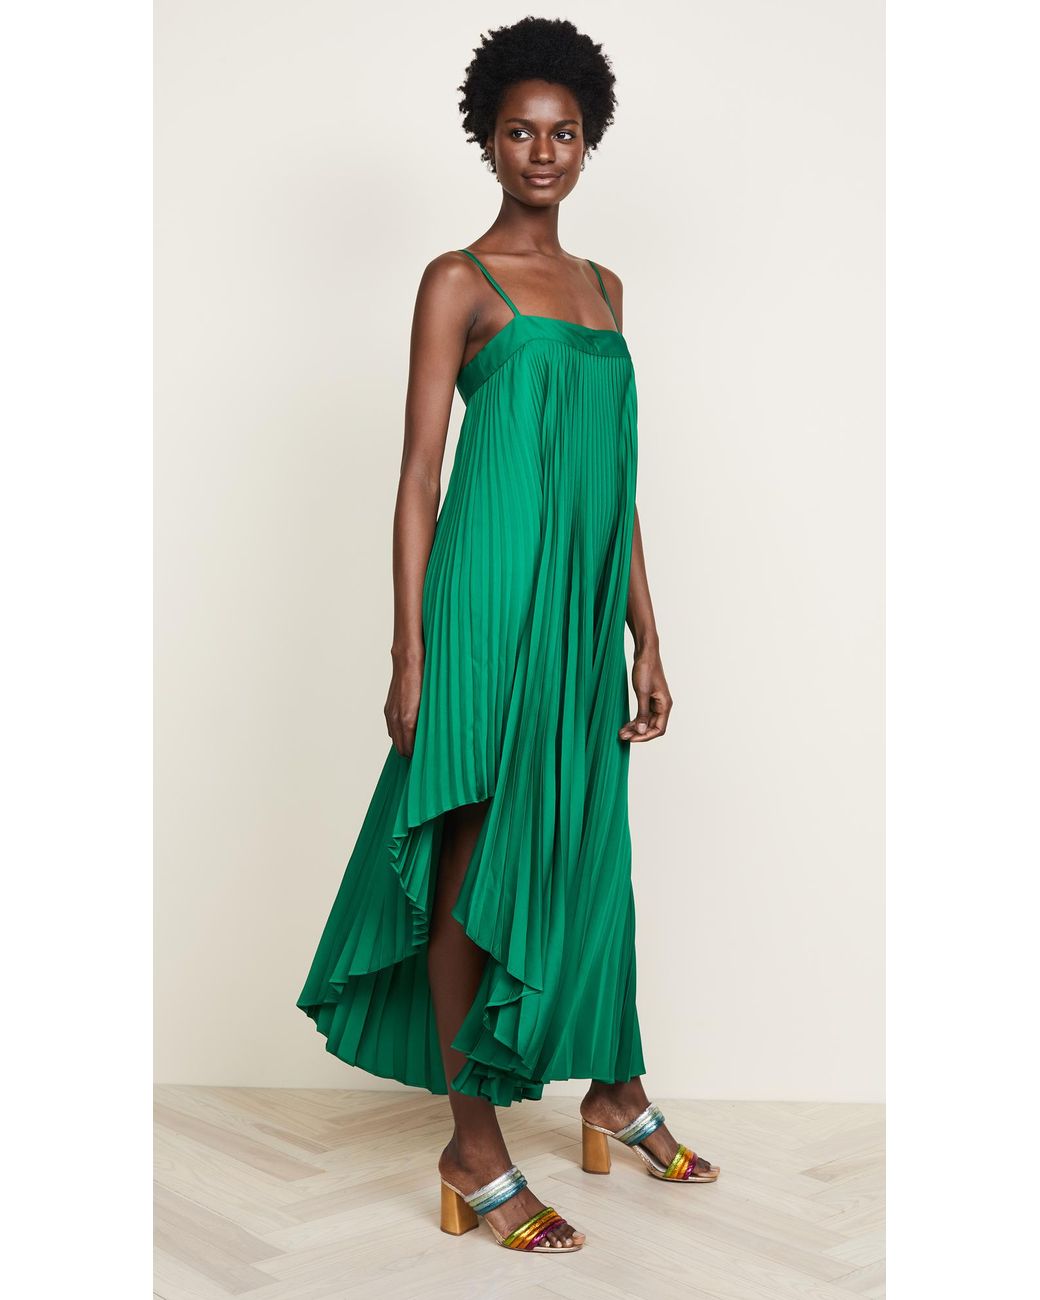 MILLY Irene Dress in Green | Lyst